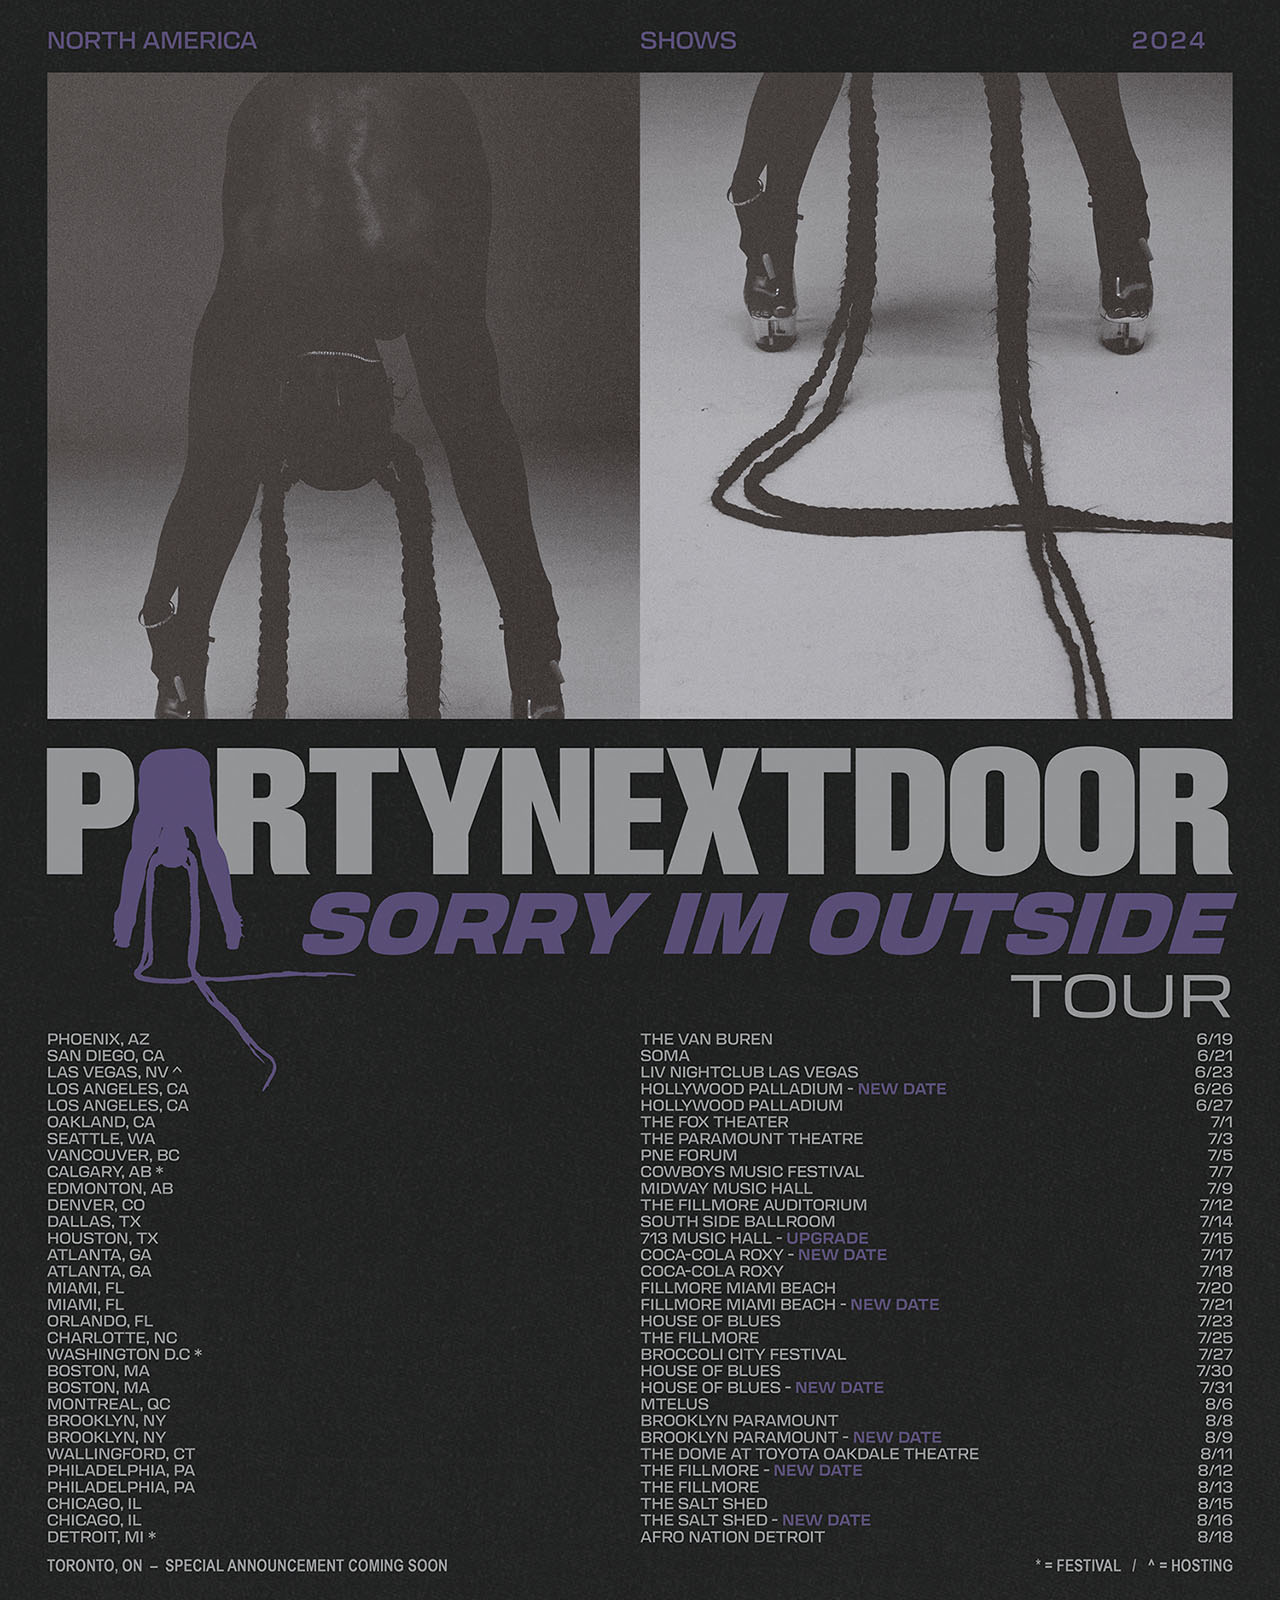 PARTYNEXTDOOR Tour Poster